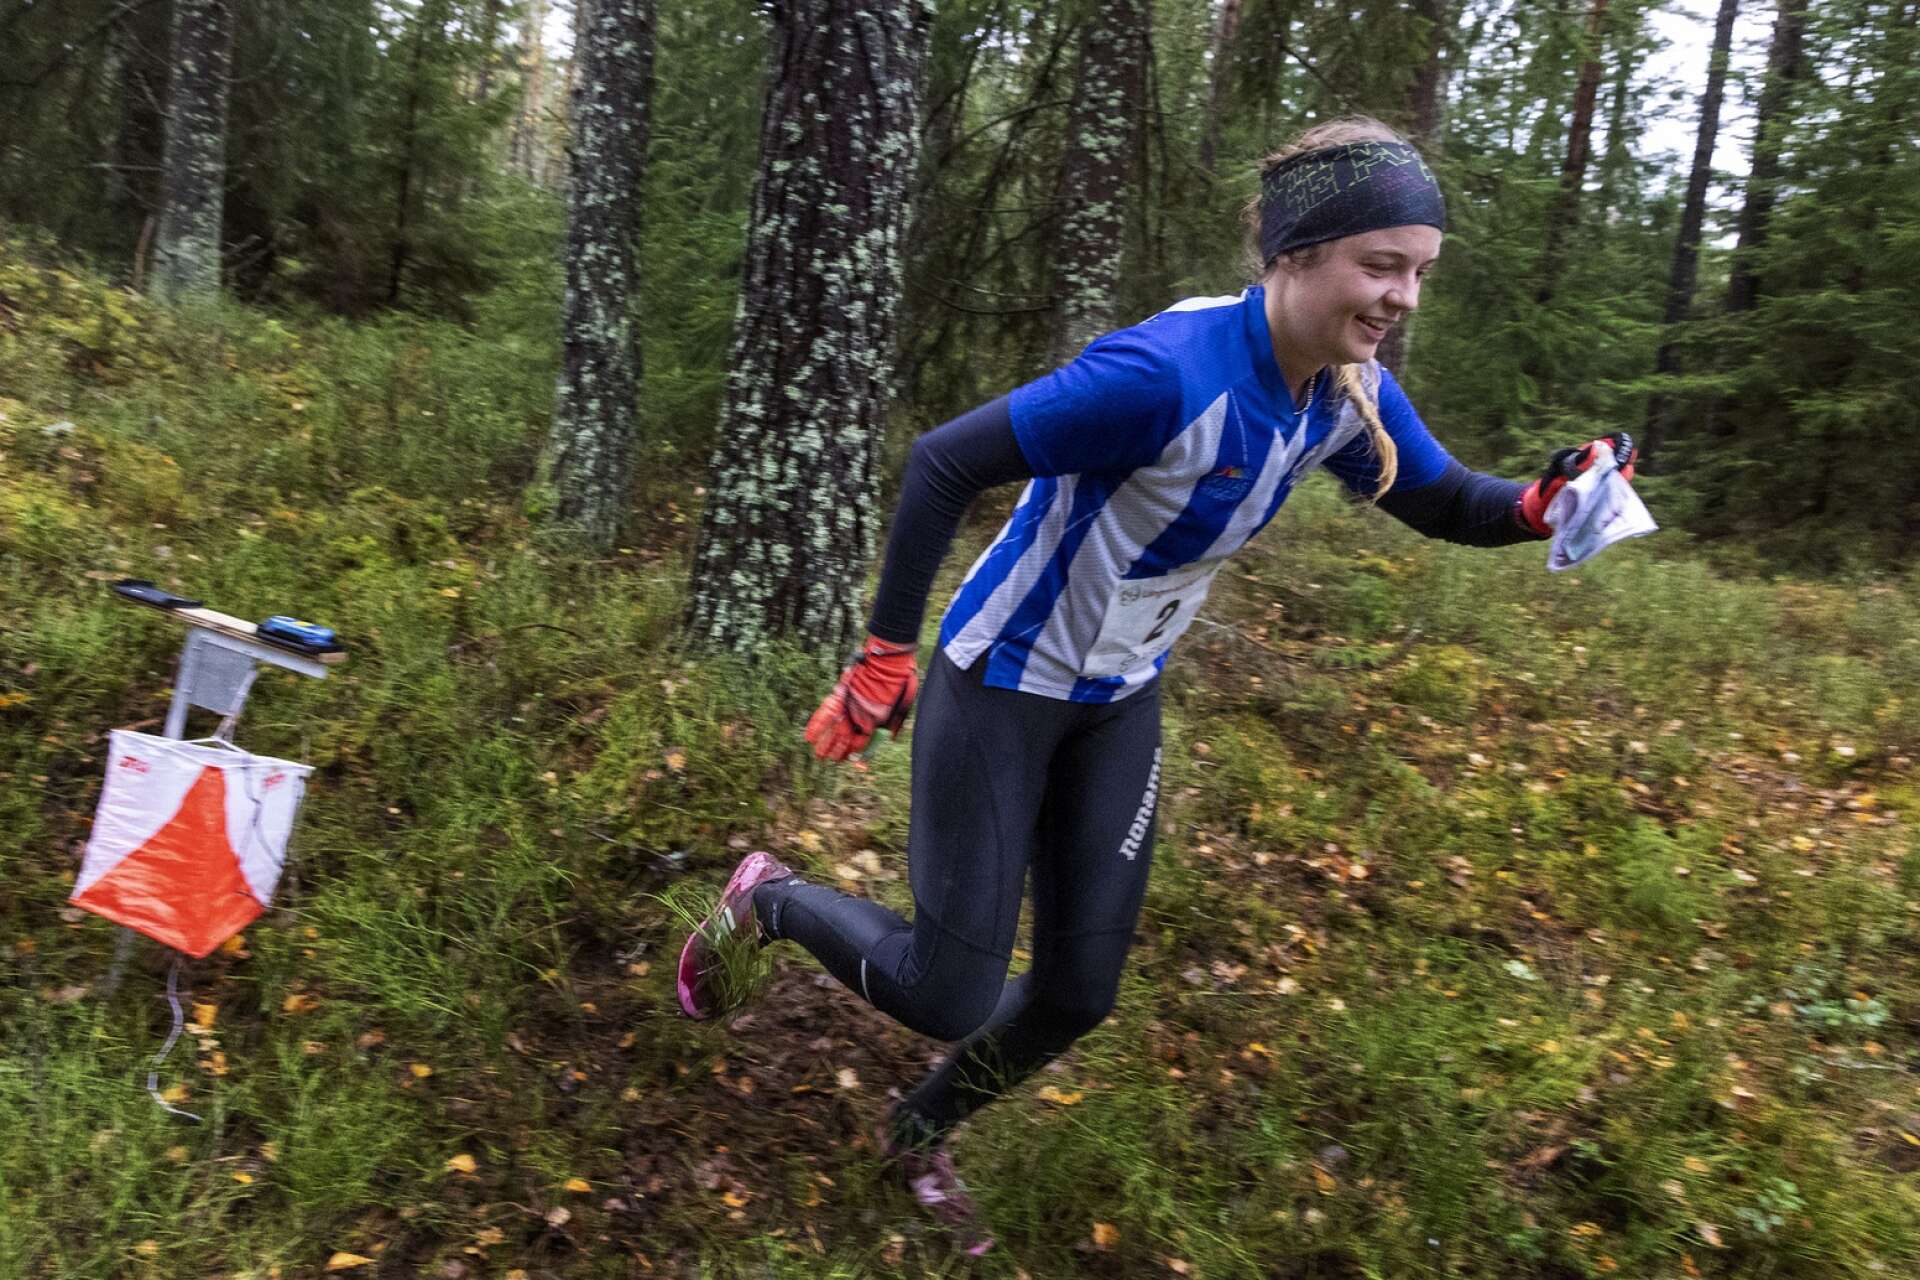 D21-segraren Erika Källvik Leufvén, numera tävlandes för IFK Göteborg, såg oförskämt pigg ut på den över 15 kilometer långa banan.